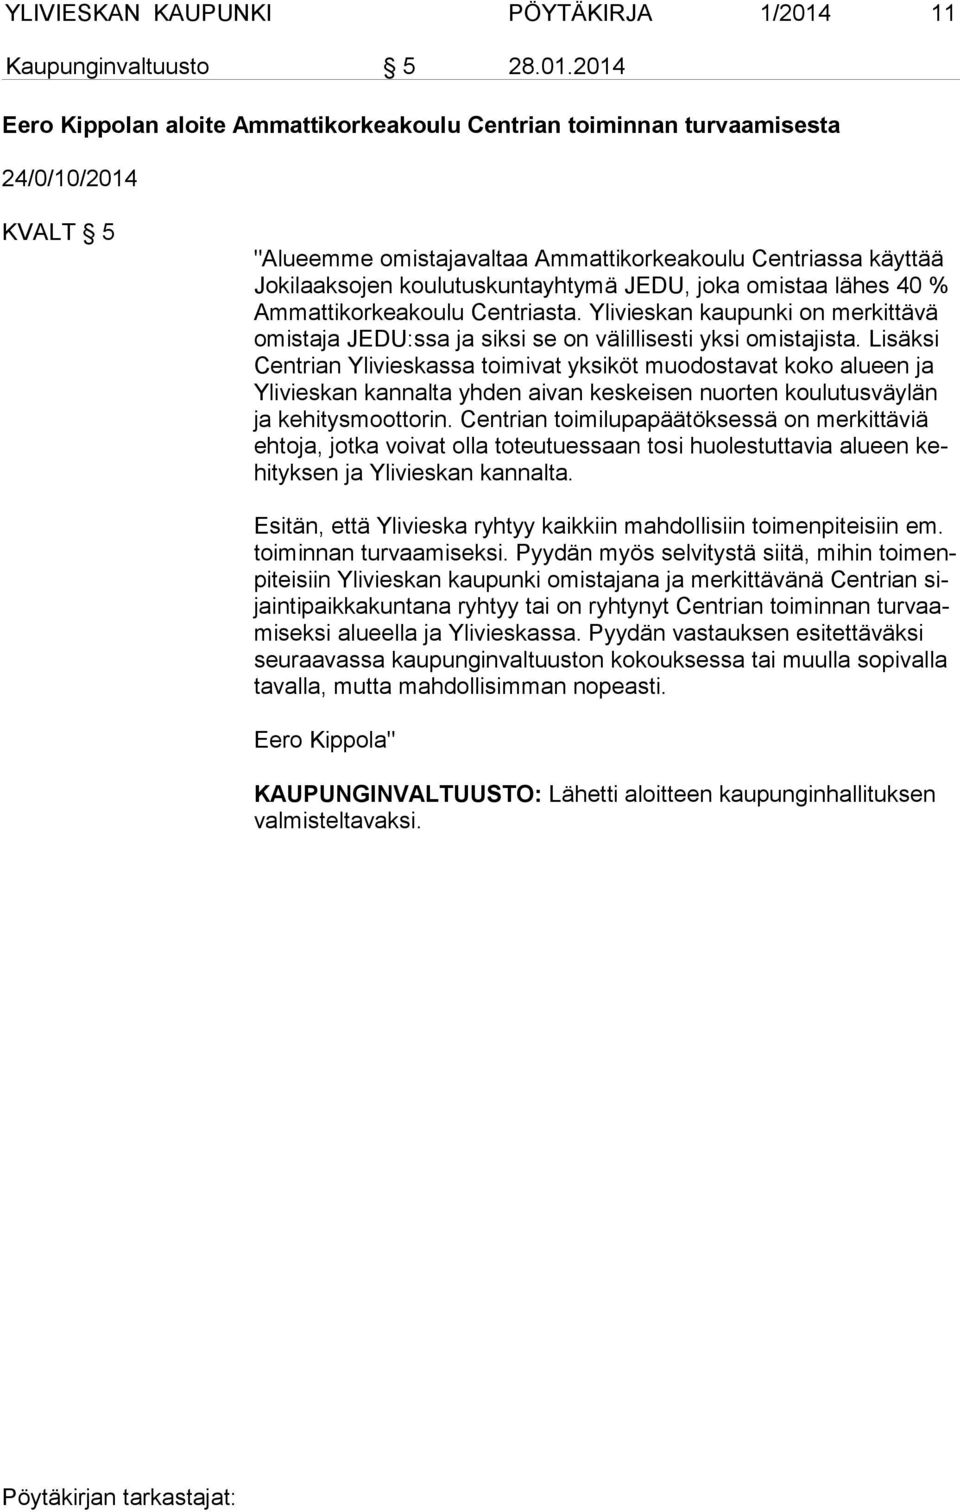 2014 Eero Kippolan aloite Ammattikorkeakoulu Centrian toiminnan turvaamisesta 24/0/10/2014 KVALT 5 "Alueemme omistajavaltaa Ammattikorkeakoulu Centriassa käyttää Jo ki laak so jen koulutuskuntayhtymä